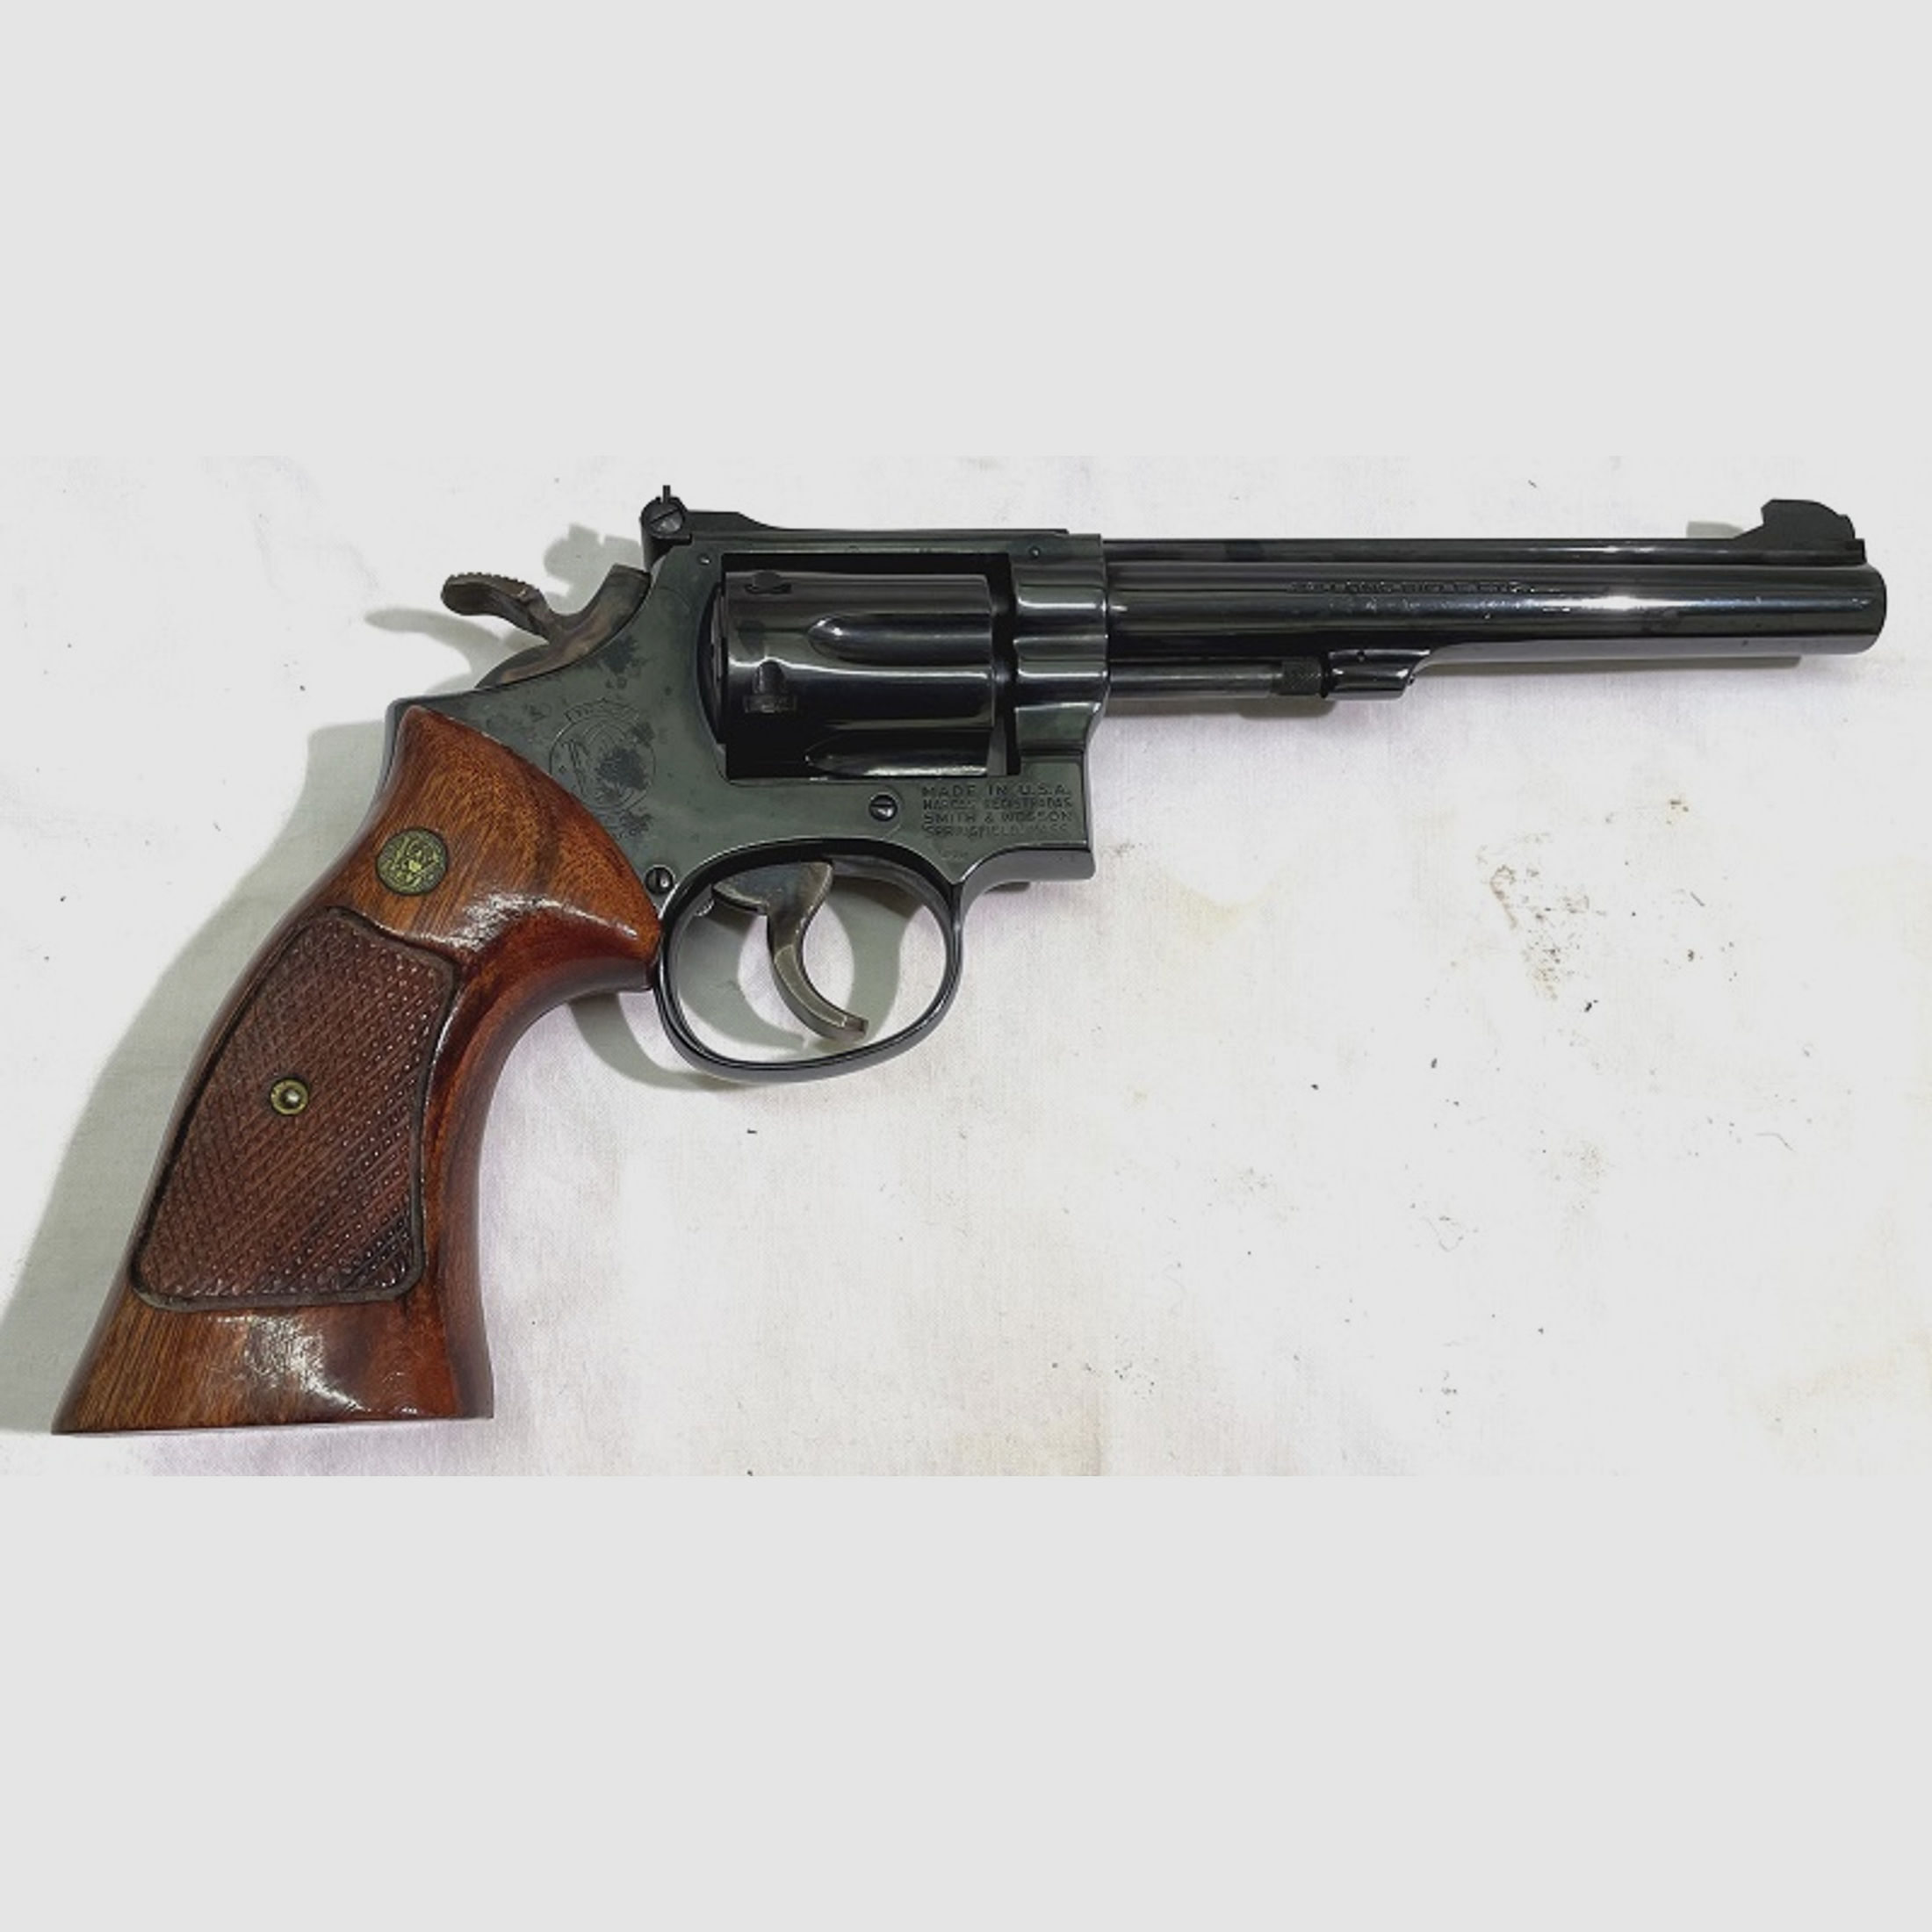 Smith & Wesson Revolver 17-3 - .22 lfb. - 6" Lauf - Holzgriffschalen - guter Zustand!